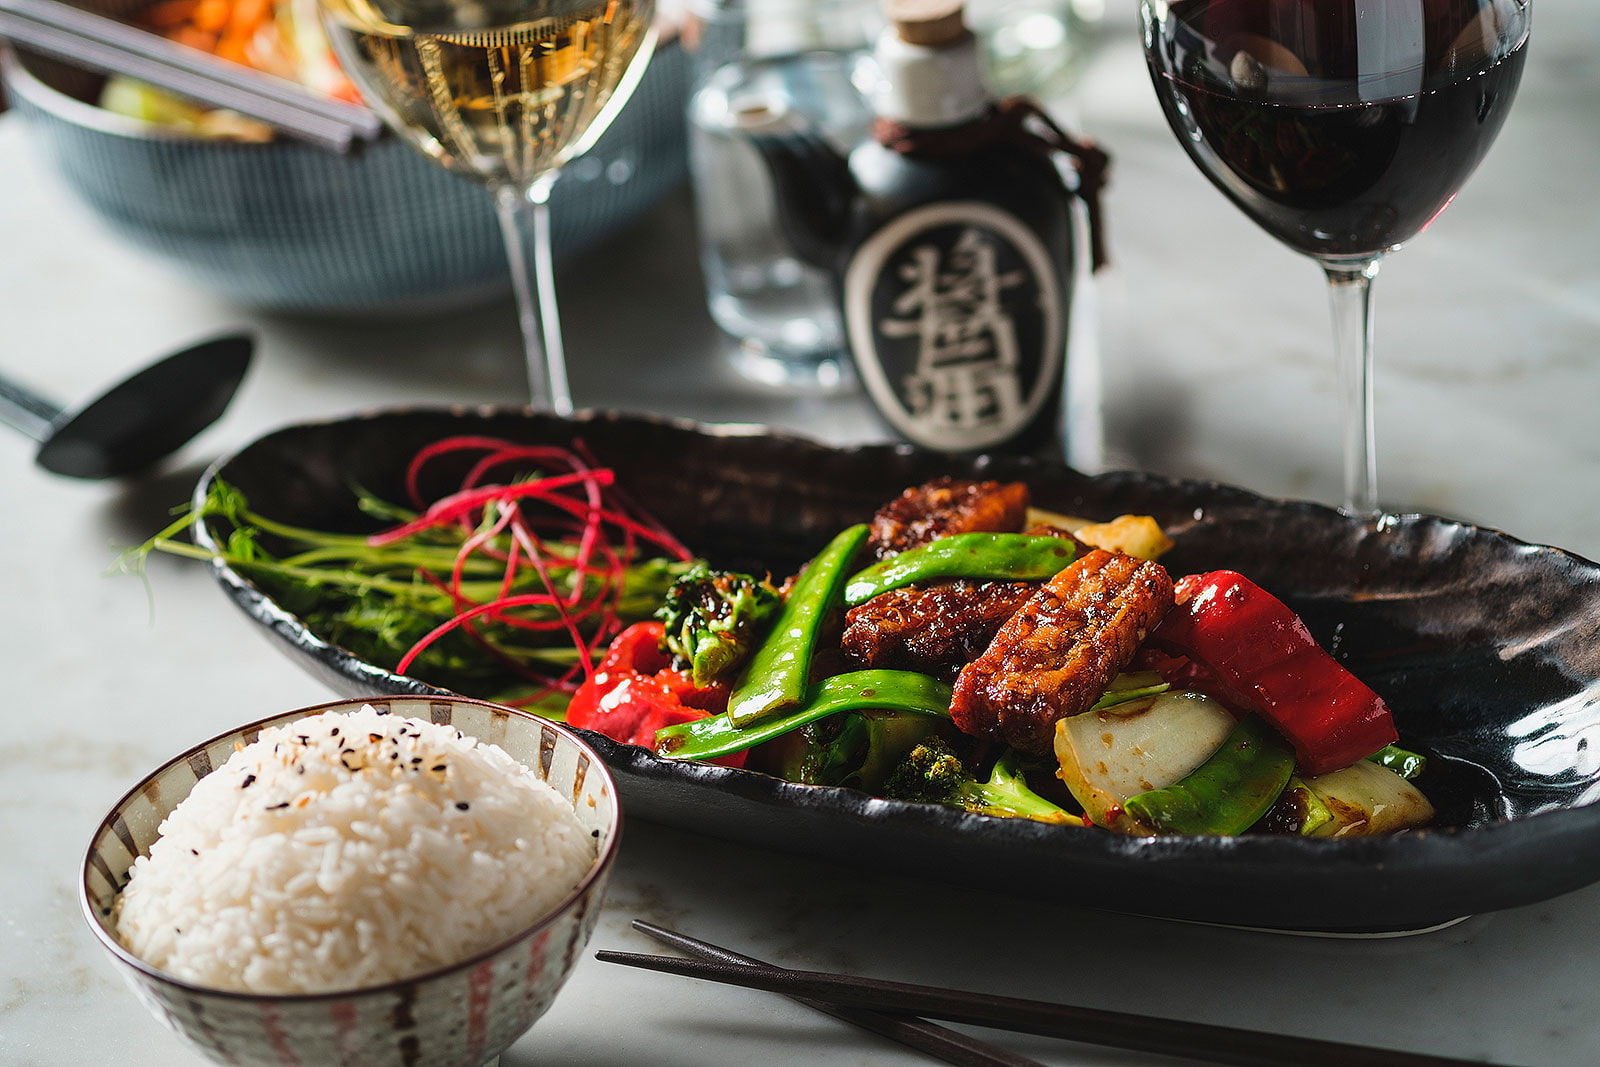 Weidao – Asian restaurants